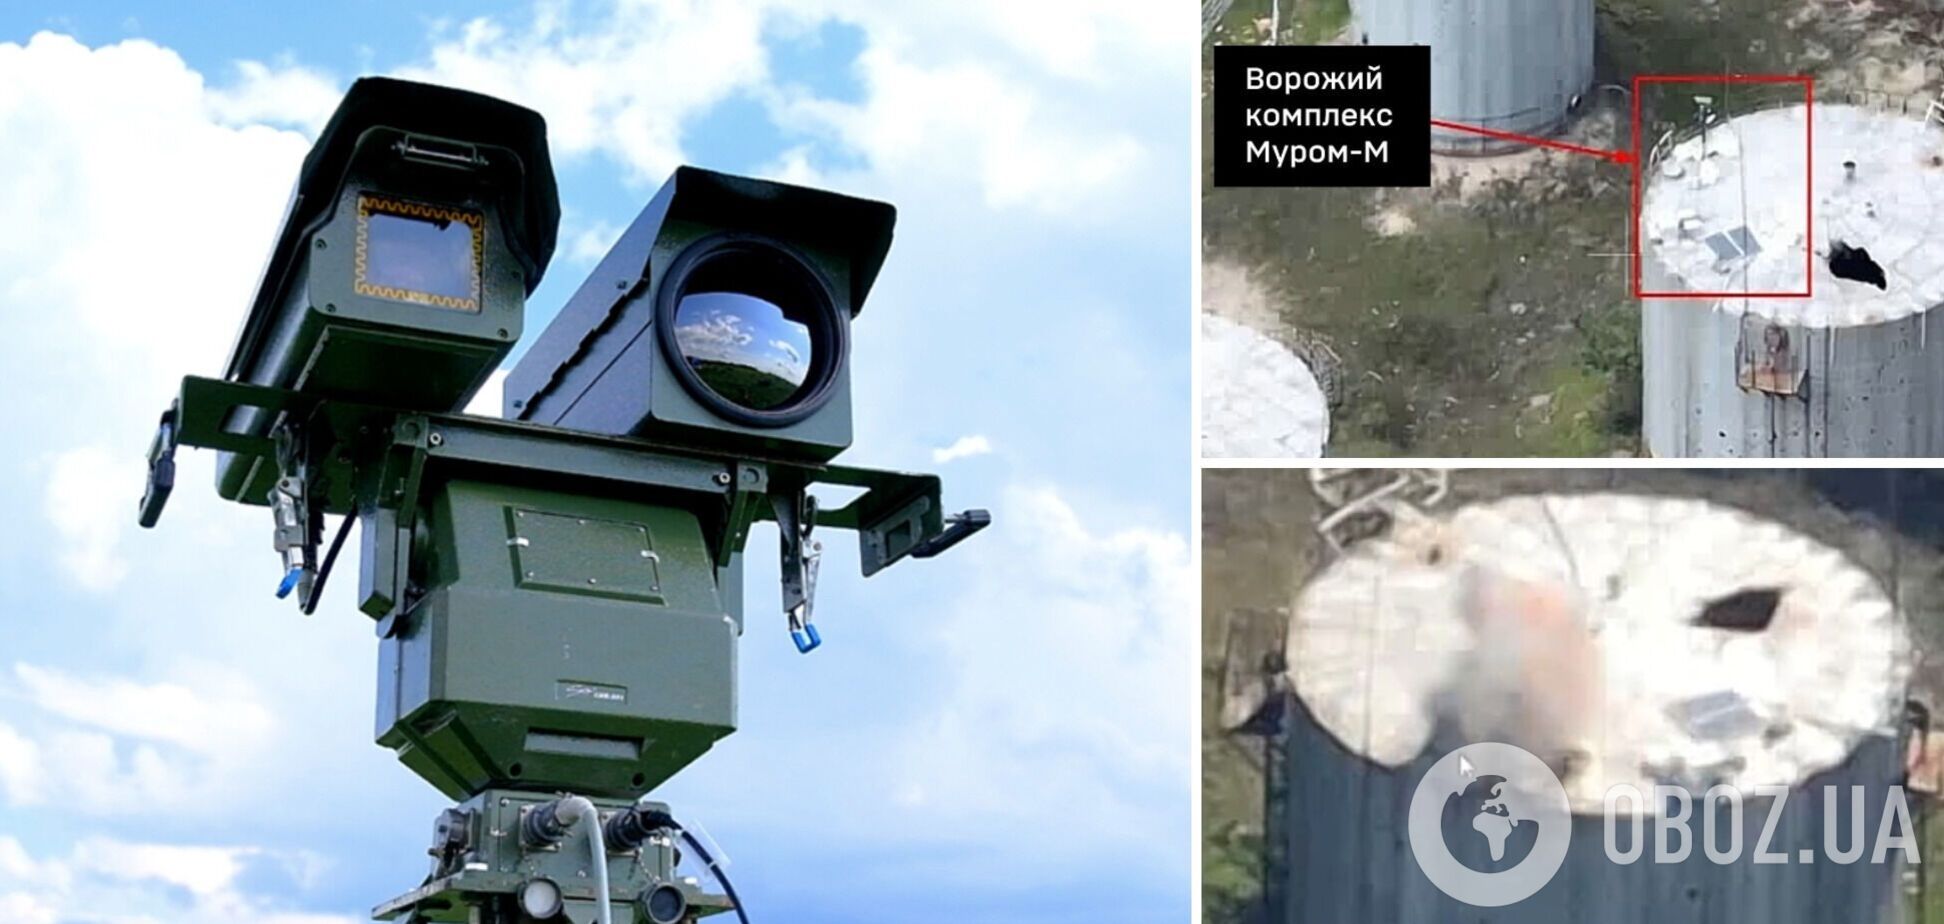 Засліпили ворога: воїни ЗСУ знищили дороговартісний російський комплекс 'Муром-М'. Відео